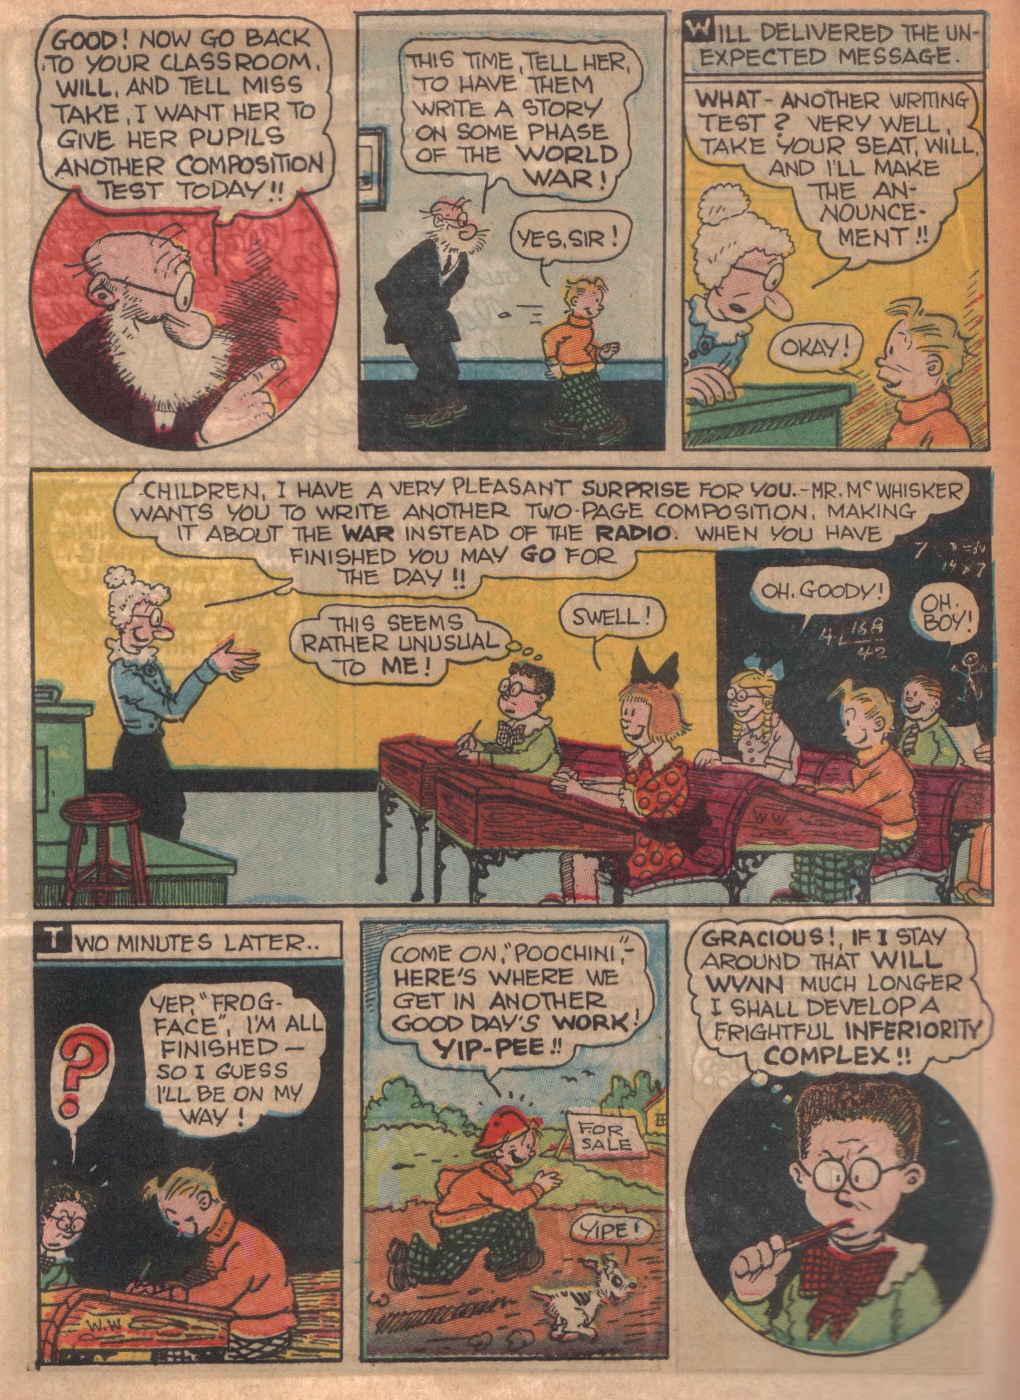 Super Dooper Funny Comics (16)